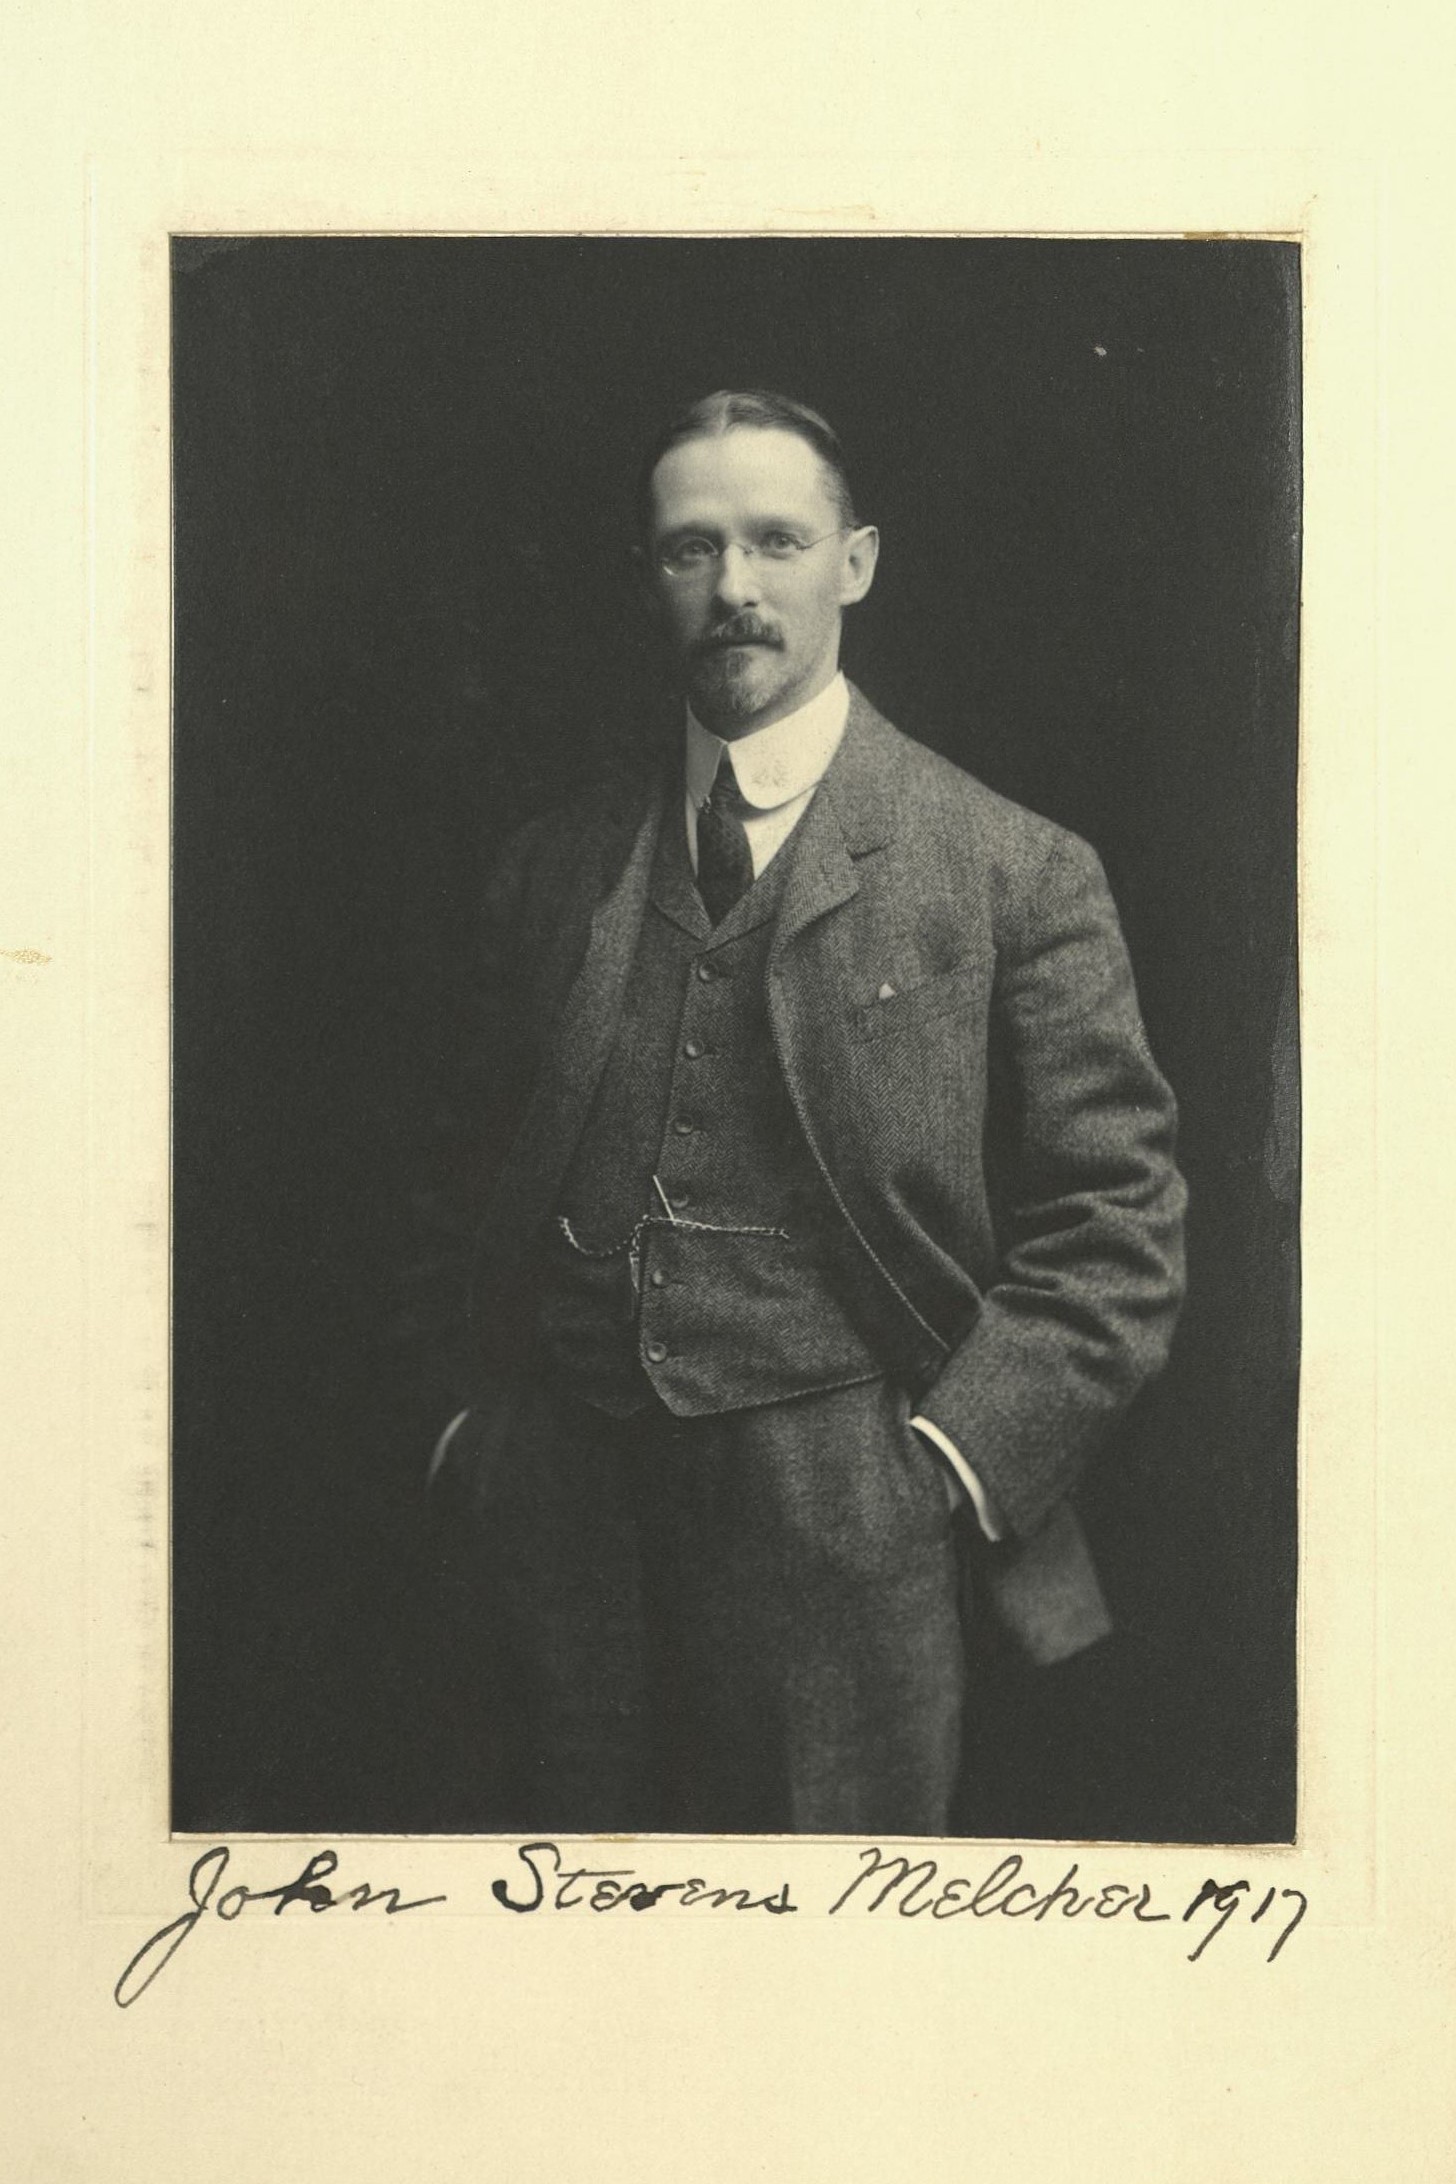 Member portrait of John S. Melcher